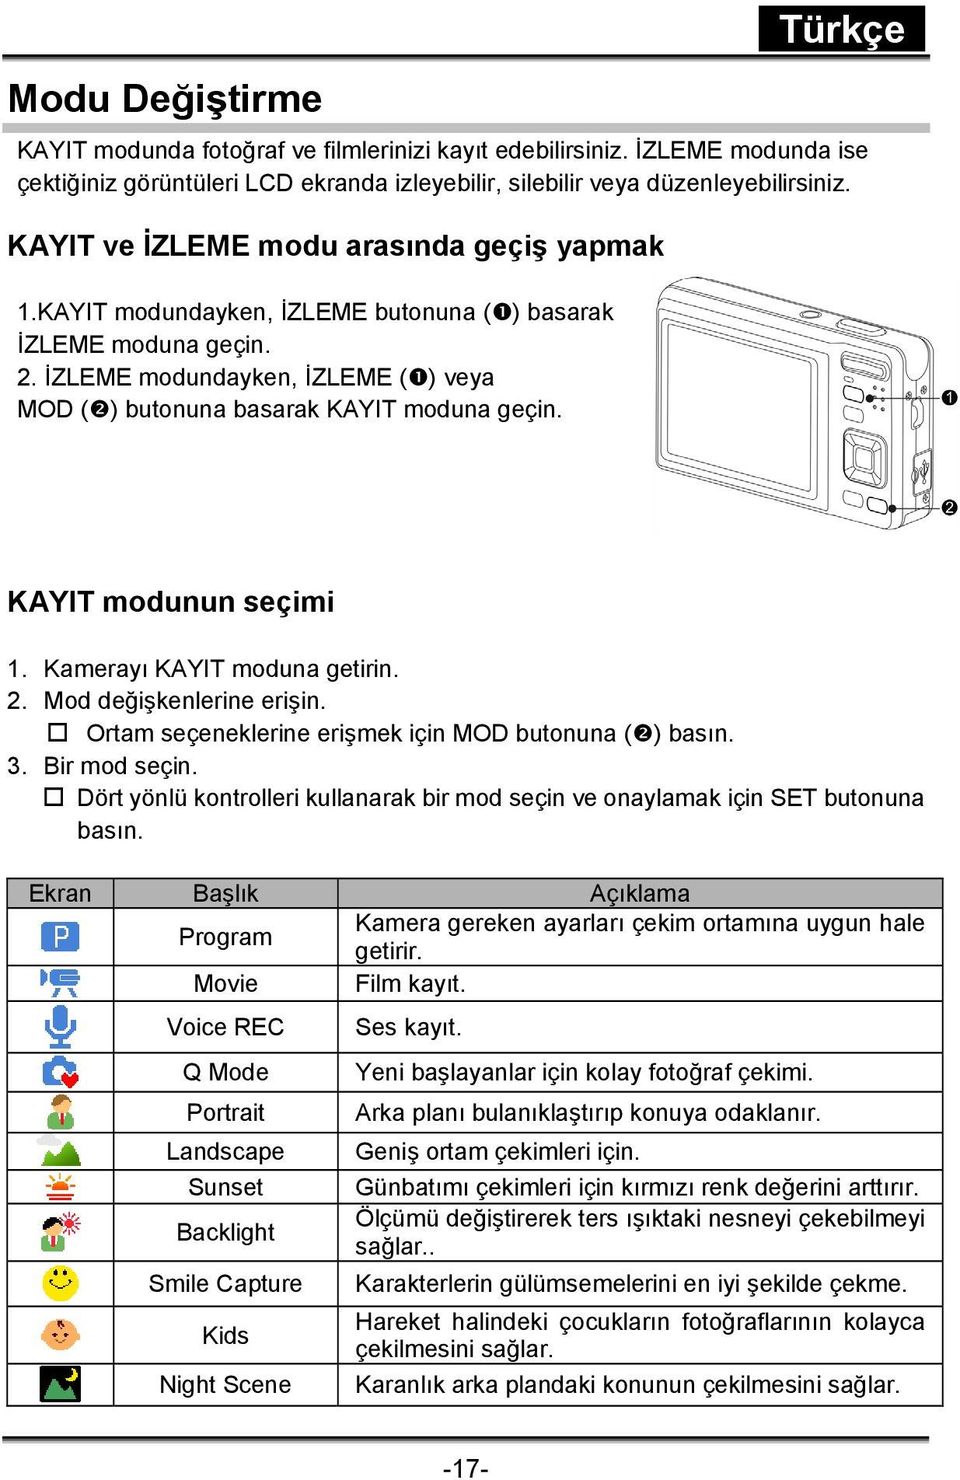 KAYIT modunun seçimi 1. Kamerayı KAYIT moduna getirin. 2. Mod değişkenlerine erişin. Ortam seçeneklerine erişmek için MOD butonuna ( ) basın. 3. Bir mod seçin.